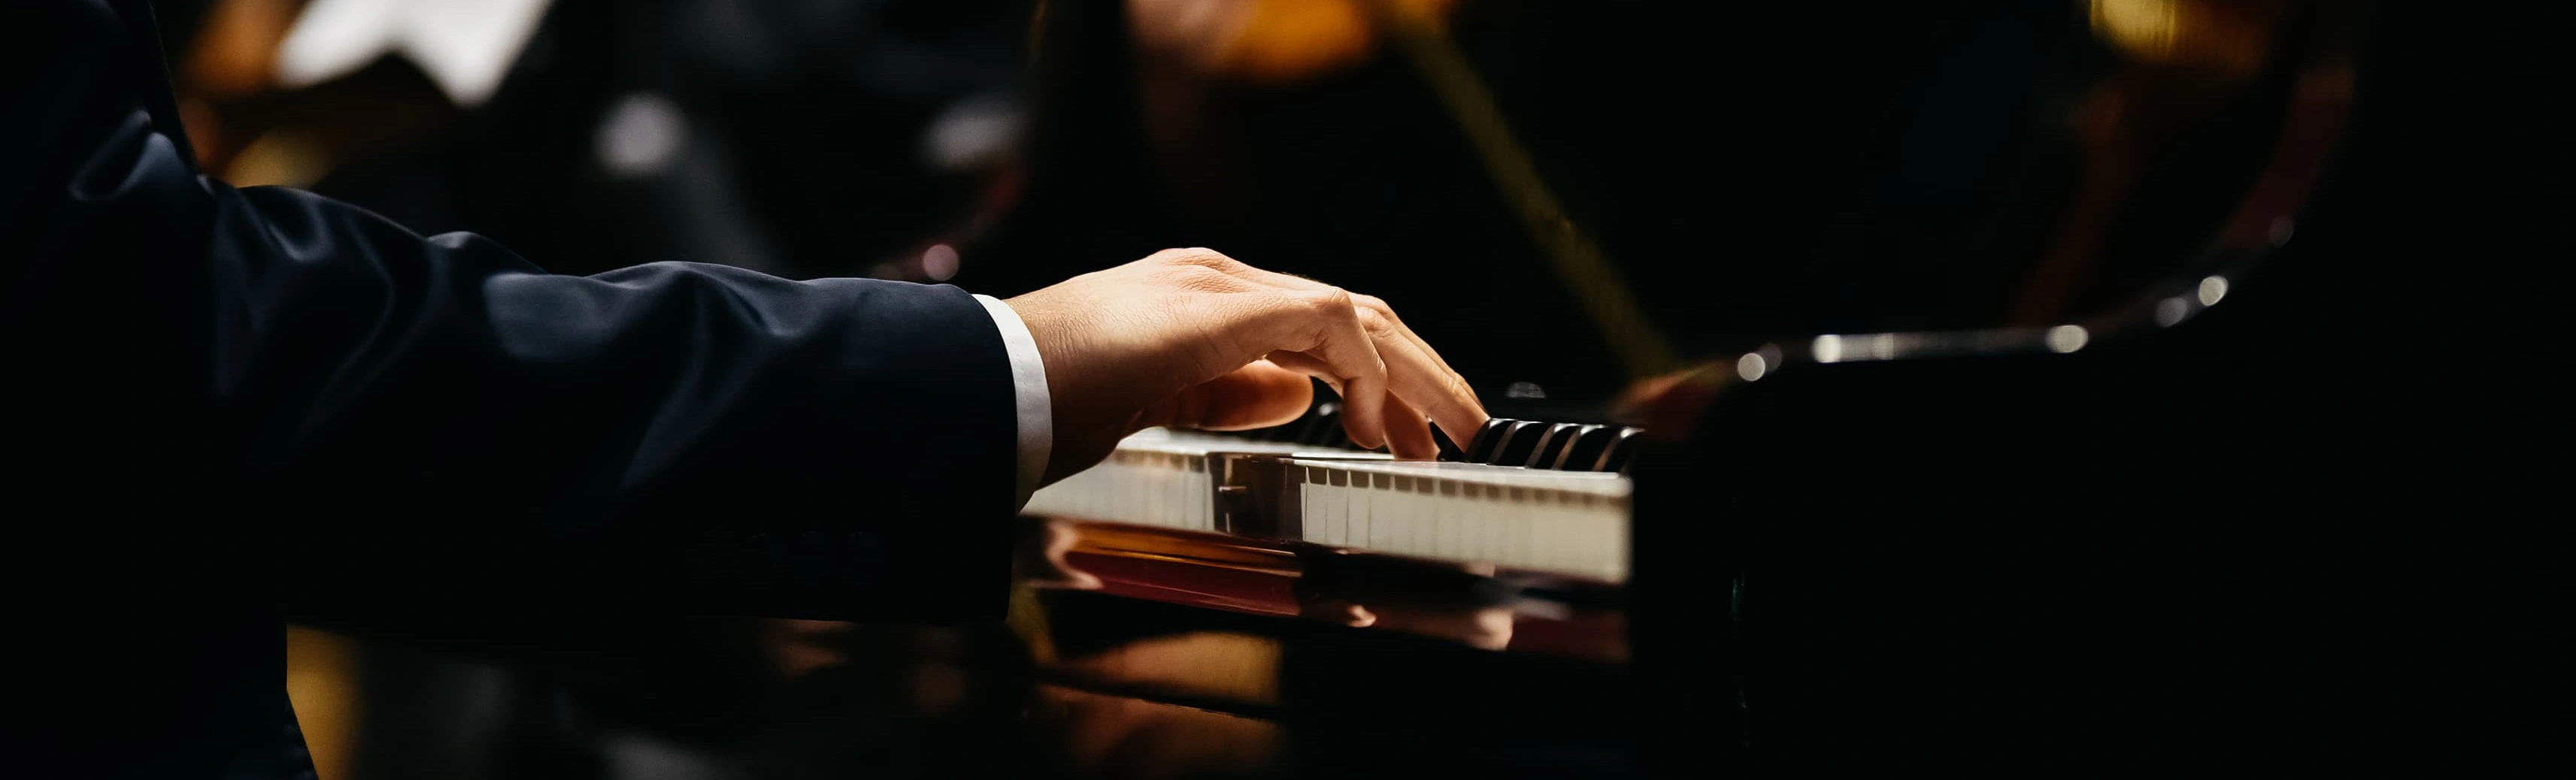 Концерт "Беларусь моя" в Зале органной и камерной музыки им. Дебольской приглашает настоящих ценителей присоединиться